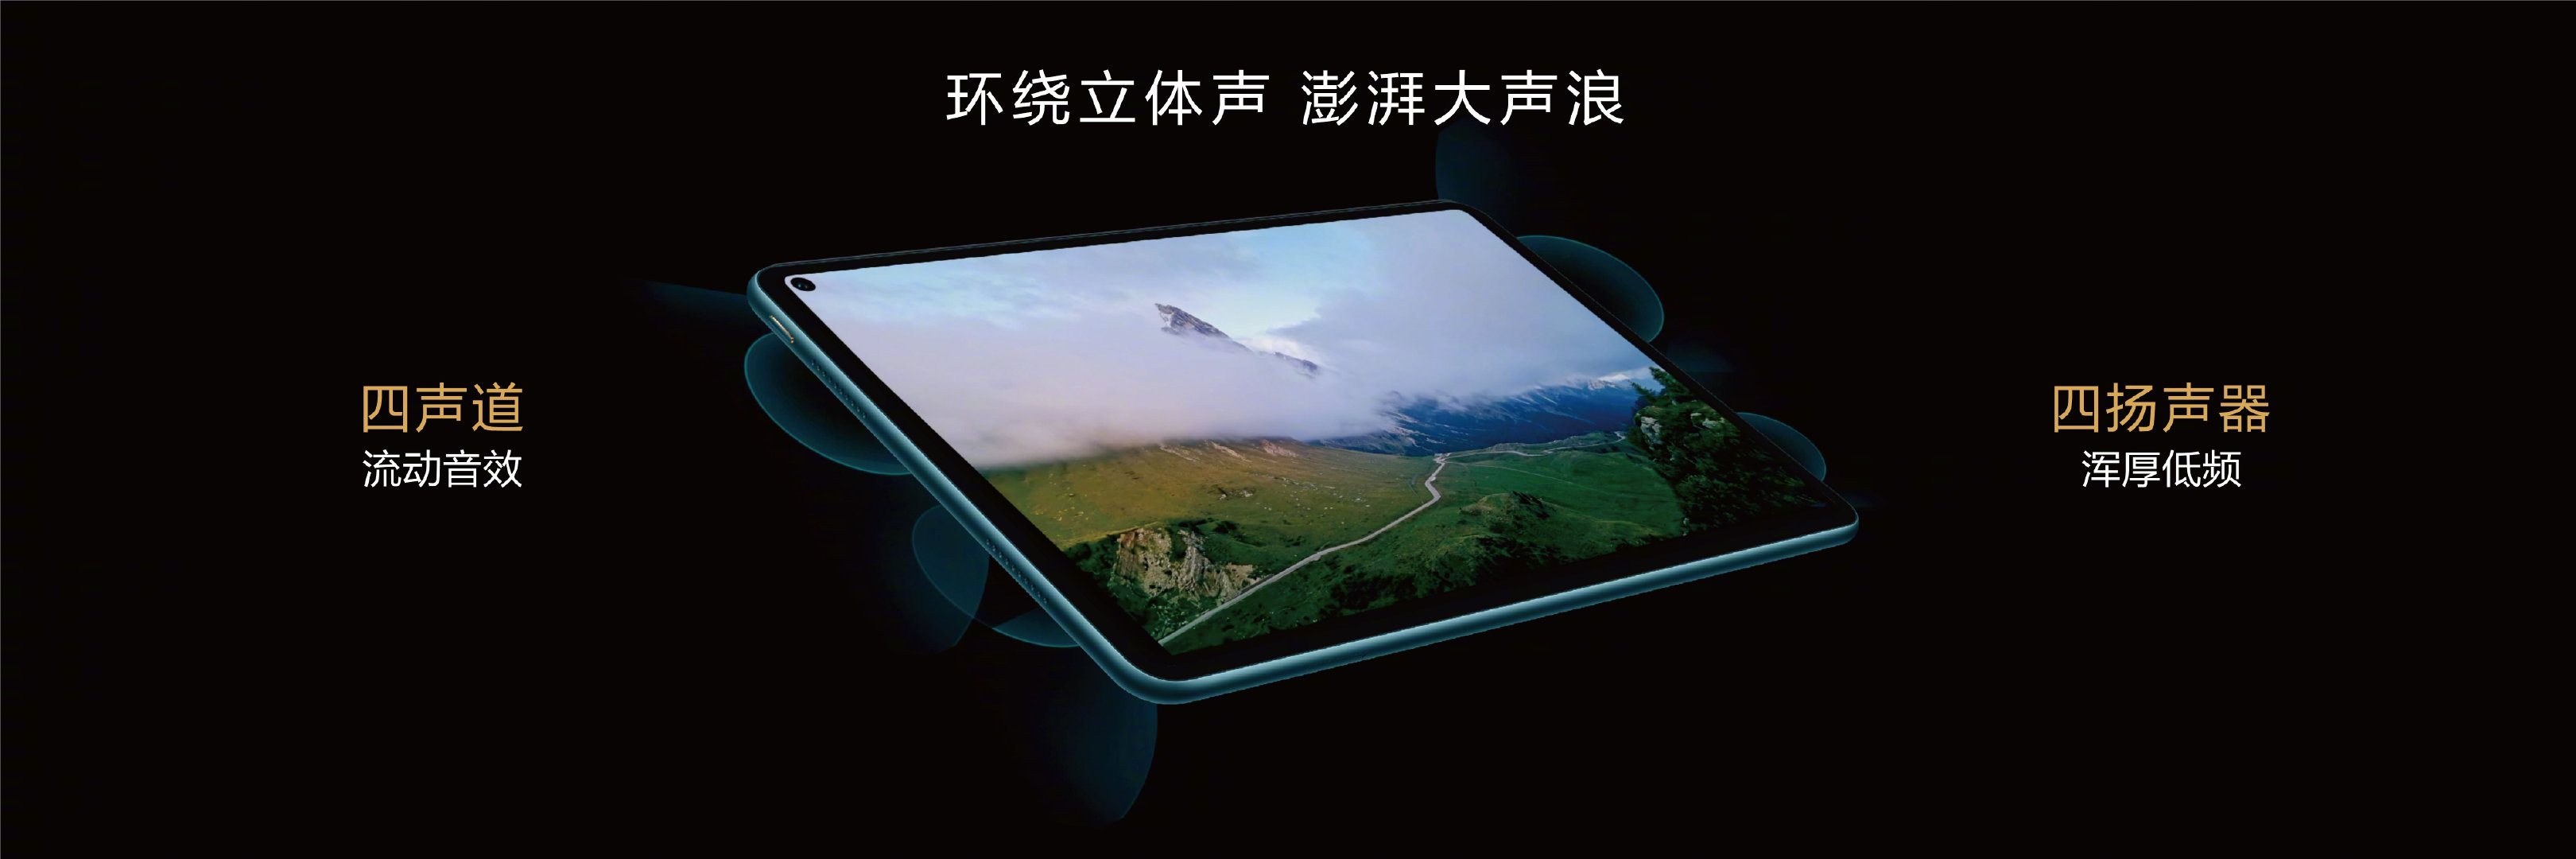 华为MatePad Pro 5G发布 售价折合超6000